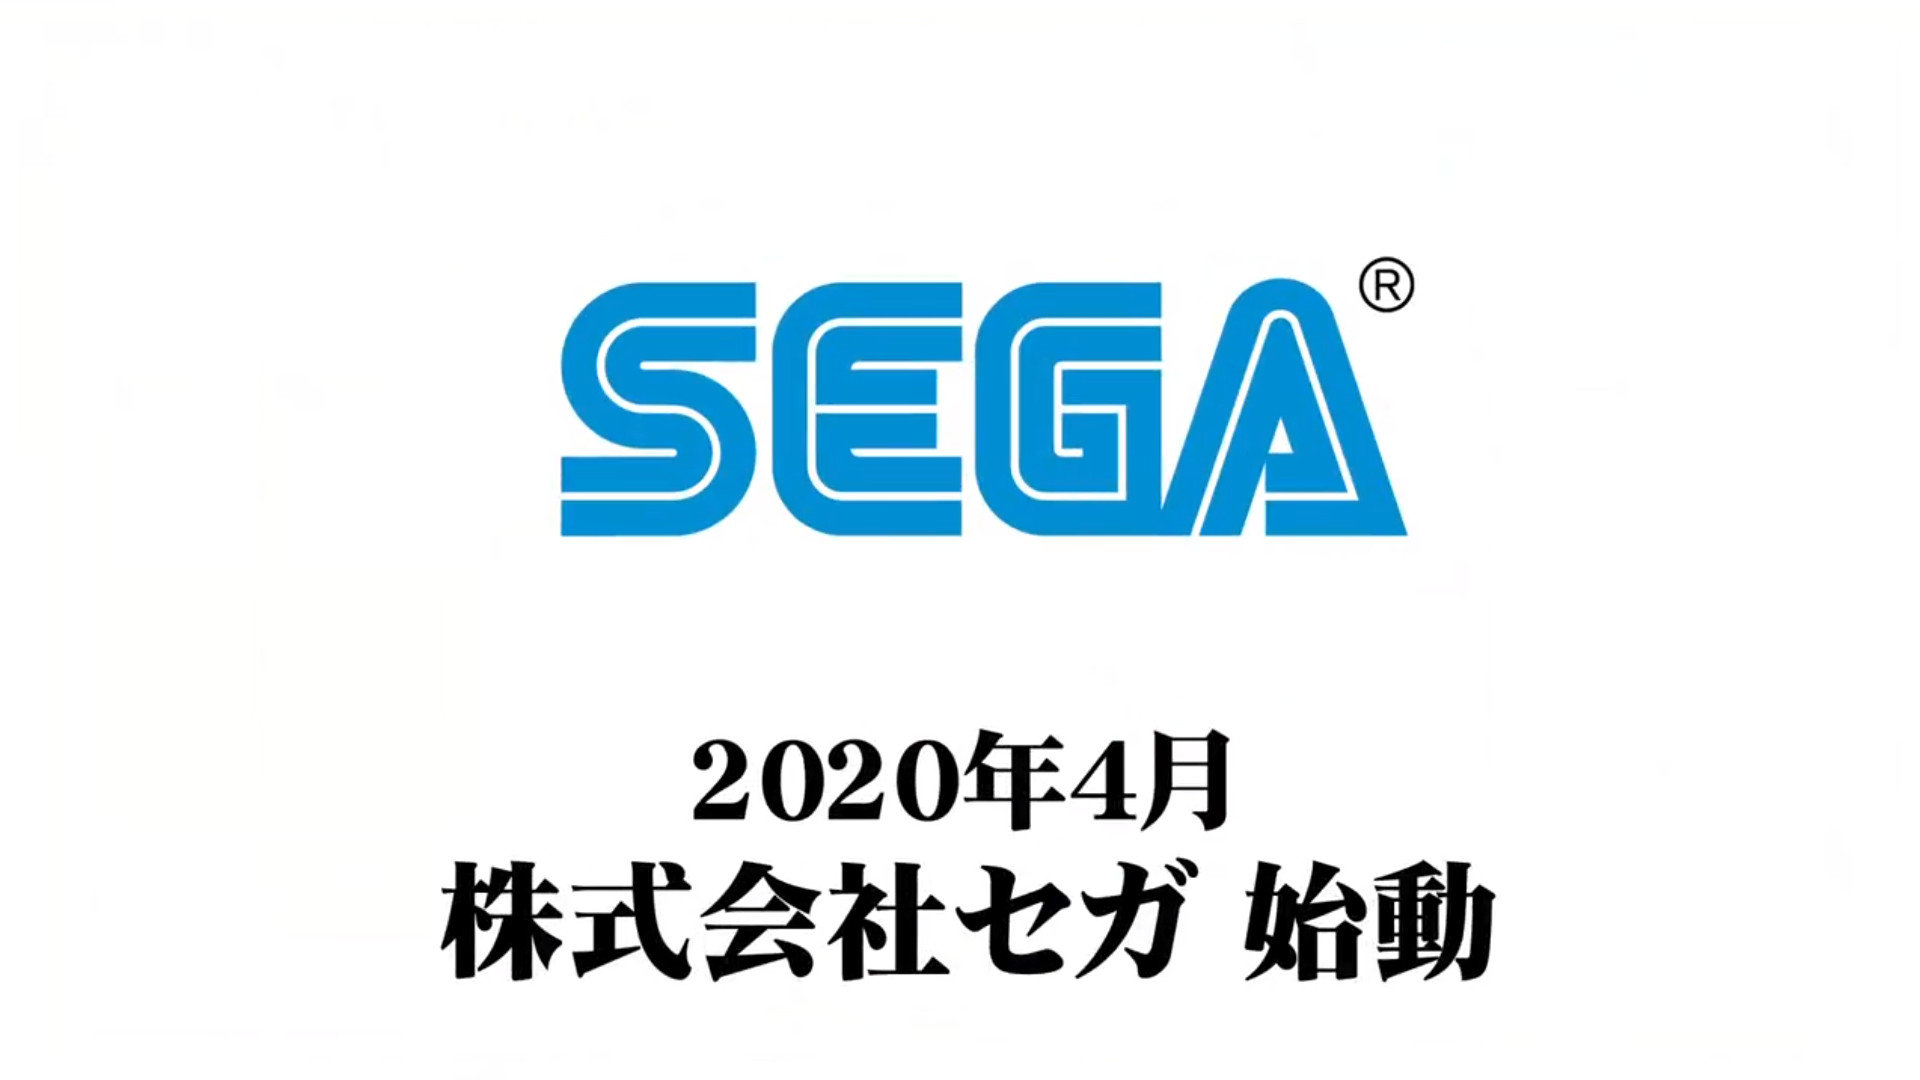 《株式会社SEGA》将于4月1日正式成立 今后启用正式名称